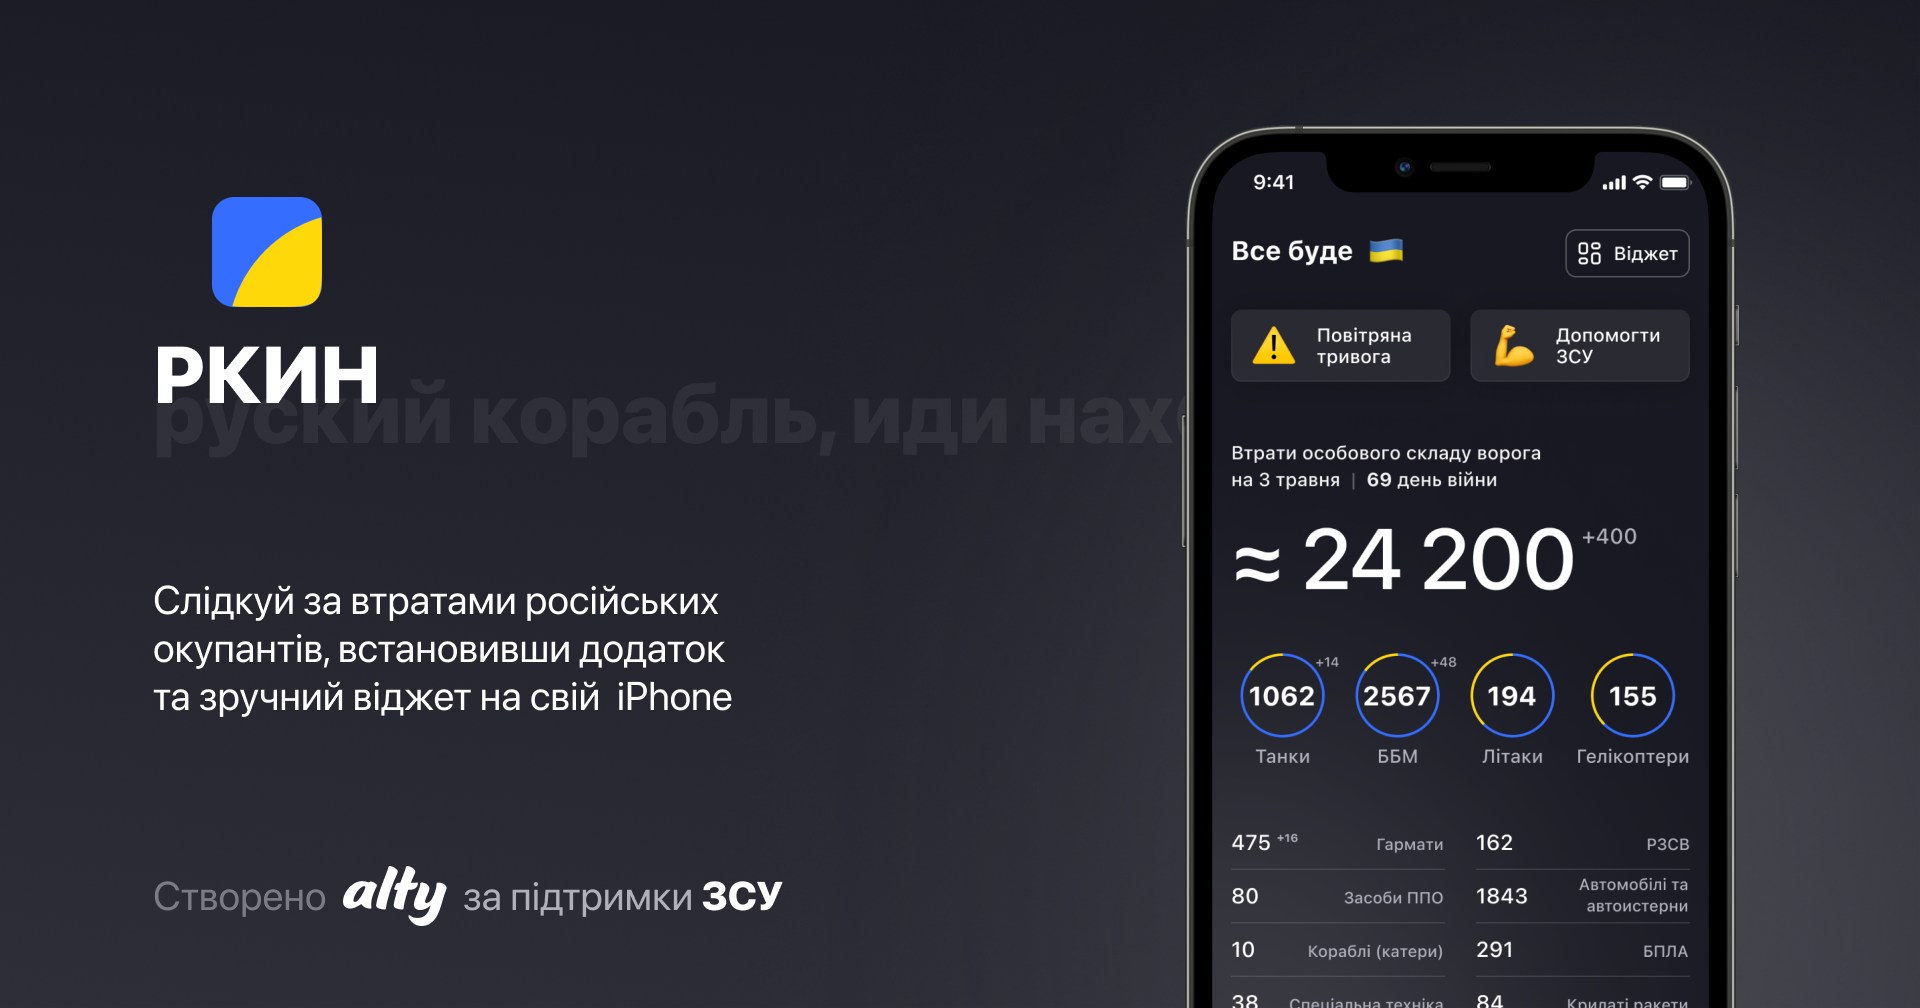 Apple minaccia di rimuovere dall'App Store l'applicazione ucraina RKIN con i dati sulle perdite degli invasori russi